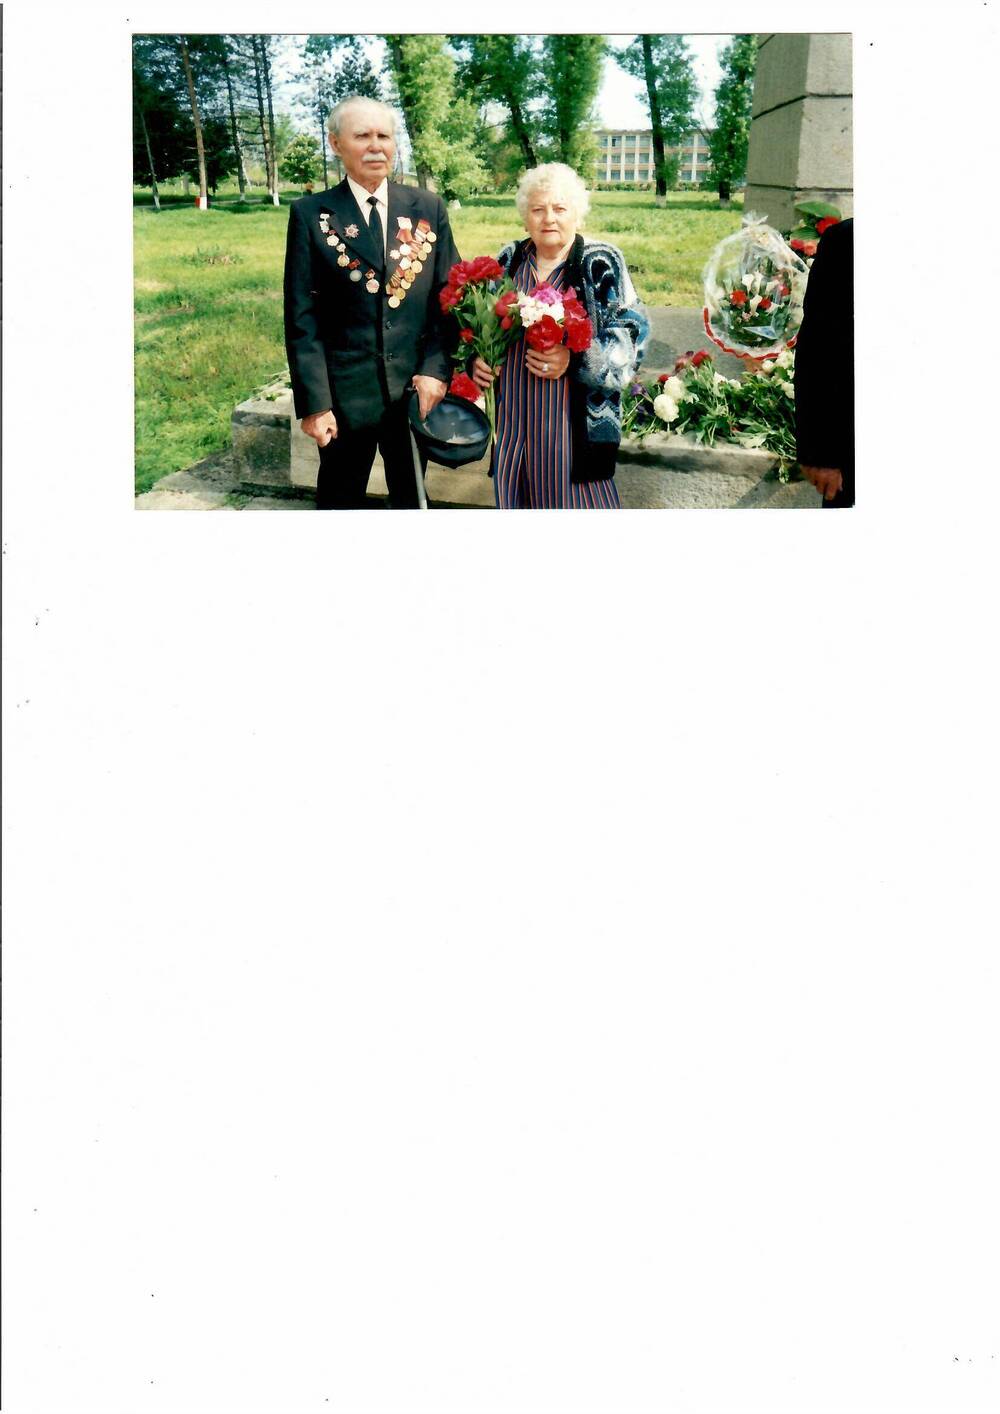 Фото цветное. На снимке изображен ветеран ВОВ Иванов Михаил Александрович с супругой.